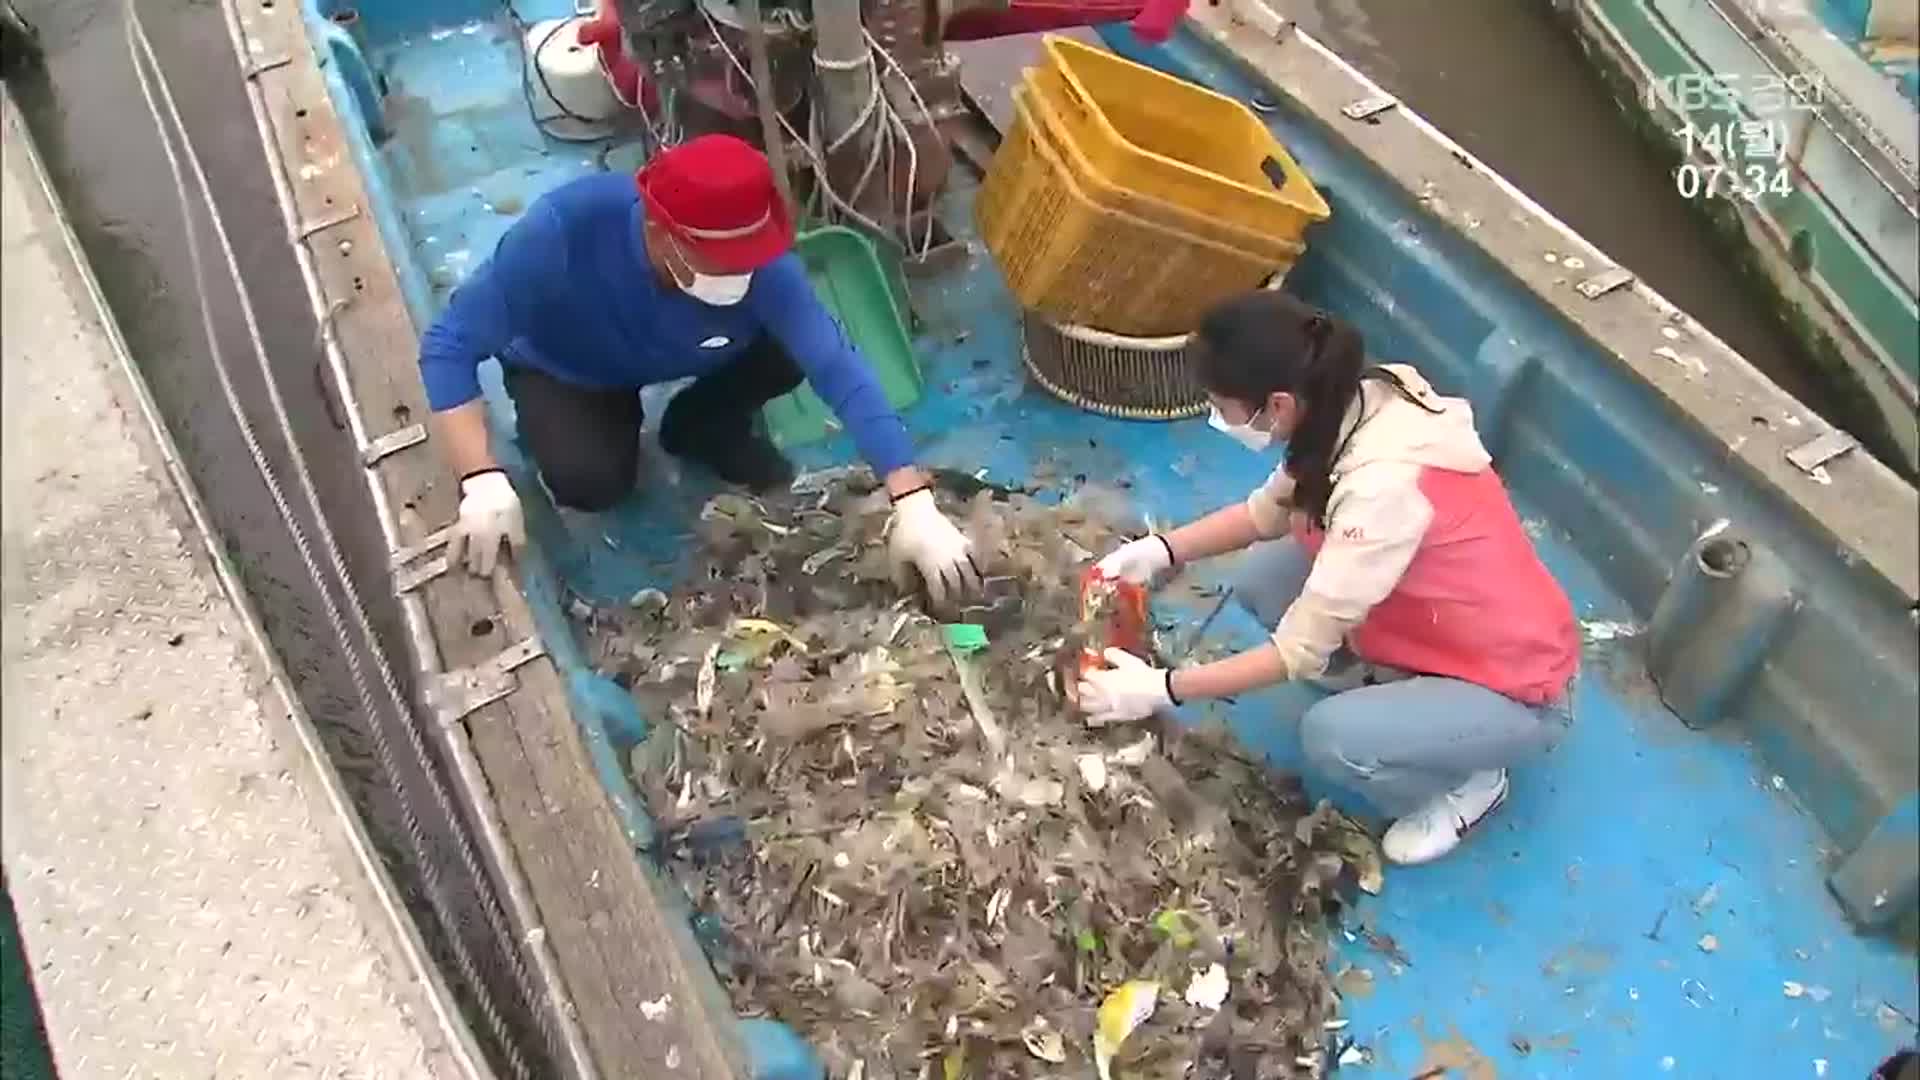 새우보다 많은 비닐…쓰레기 낚는 어민들